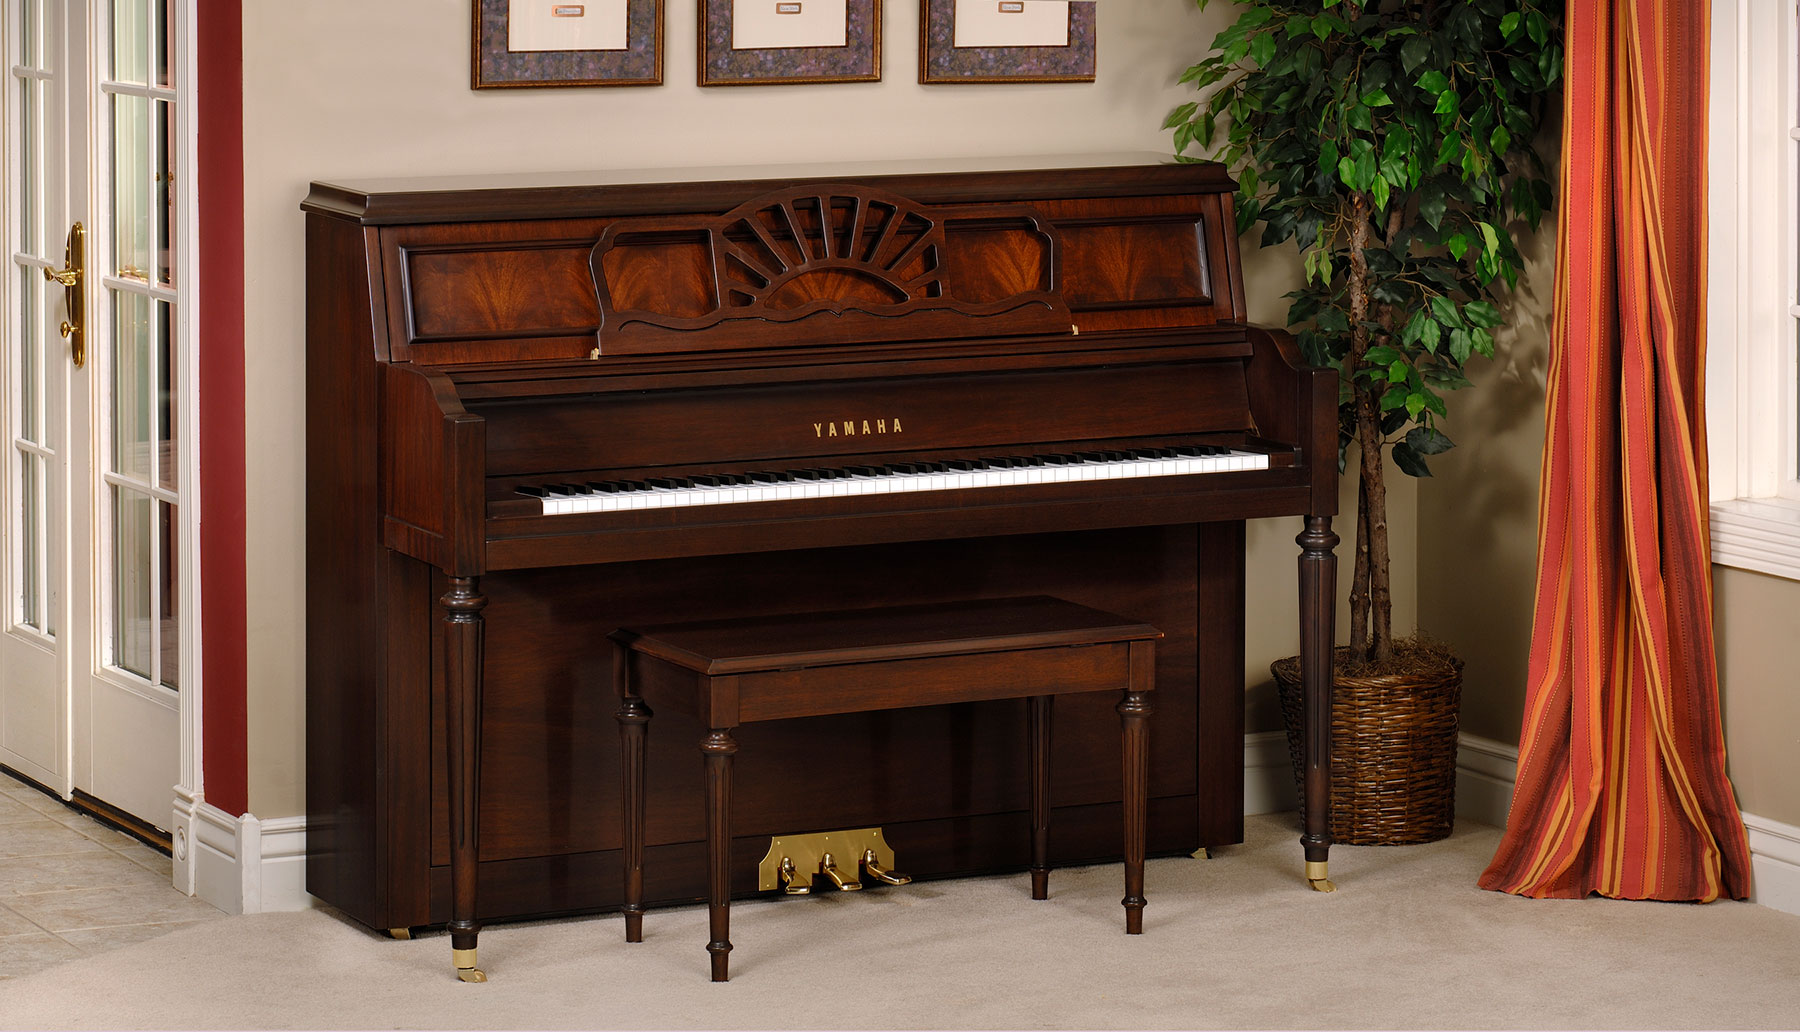 Yamaha upright piano with mahogany finish in a home